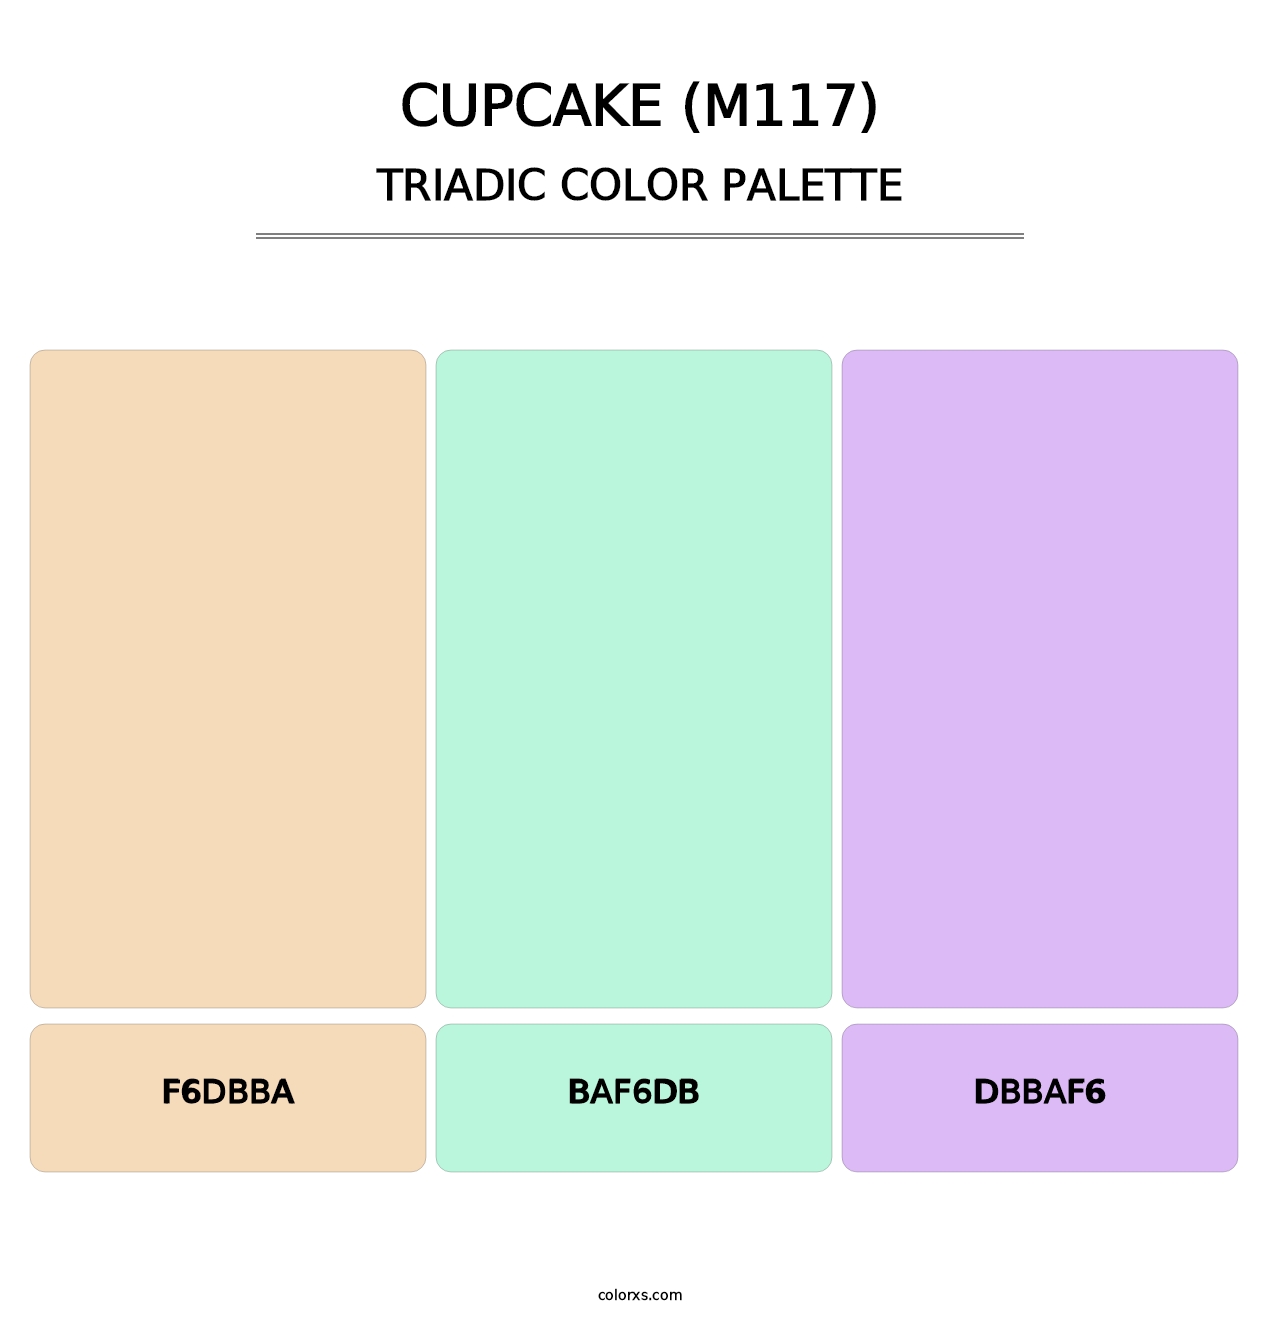 Cupcake (M117) - Triadic Color Palette